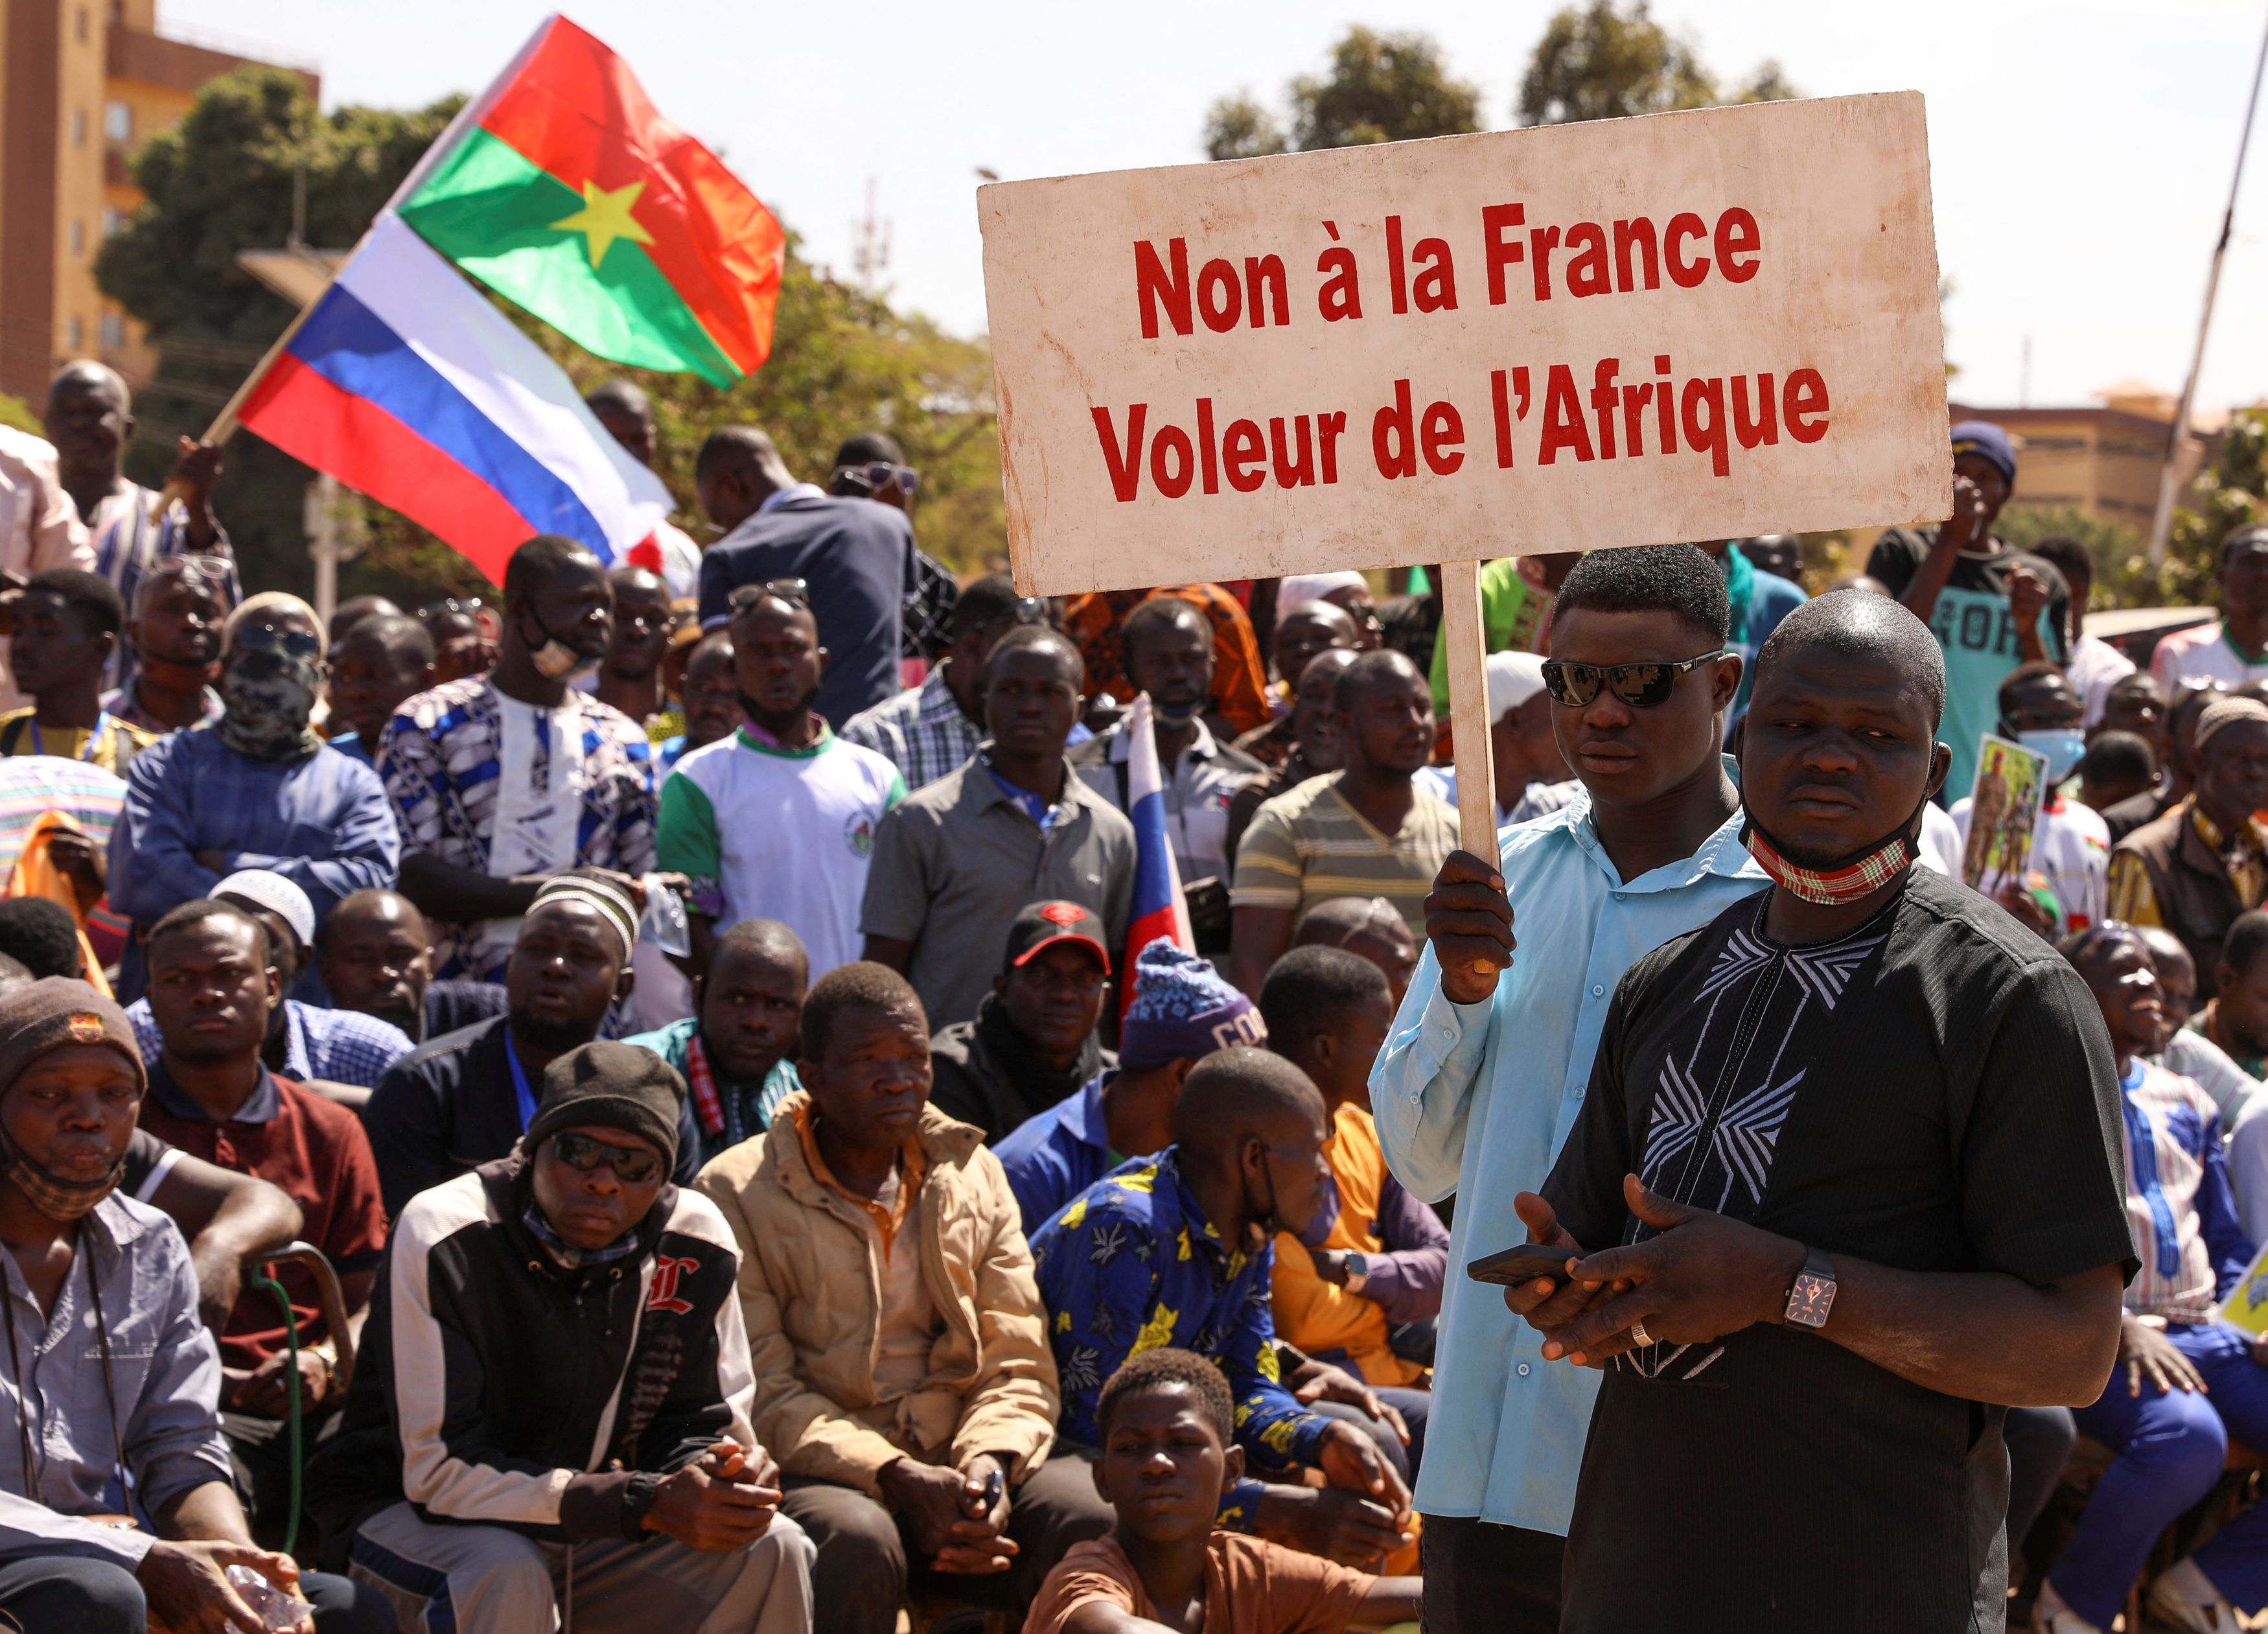 Μπουρκίνα Φάσο: Επιβεβαίωση από κυβερνητικό έγγραφο - Η χώρα έχει απαιτήσει να φύγουν τα γαλλικά στρατεύματα